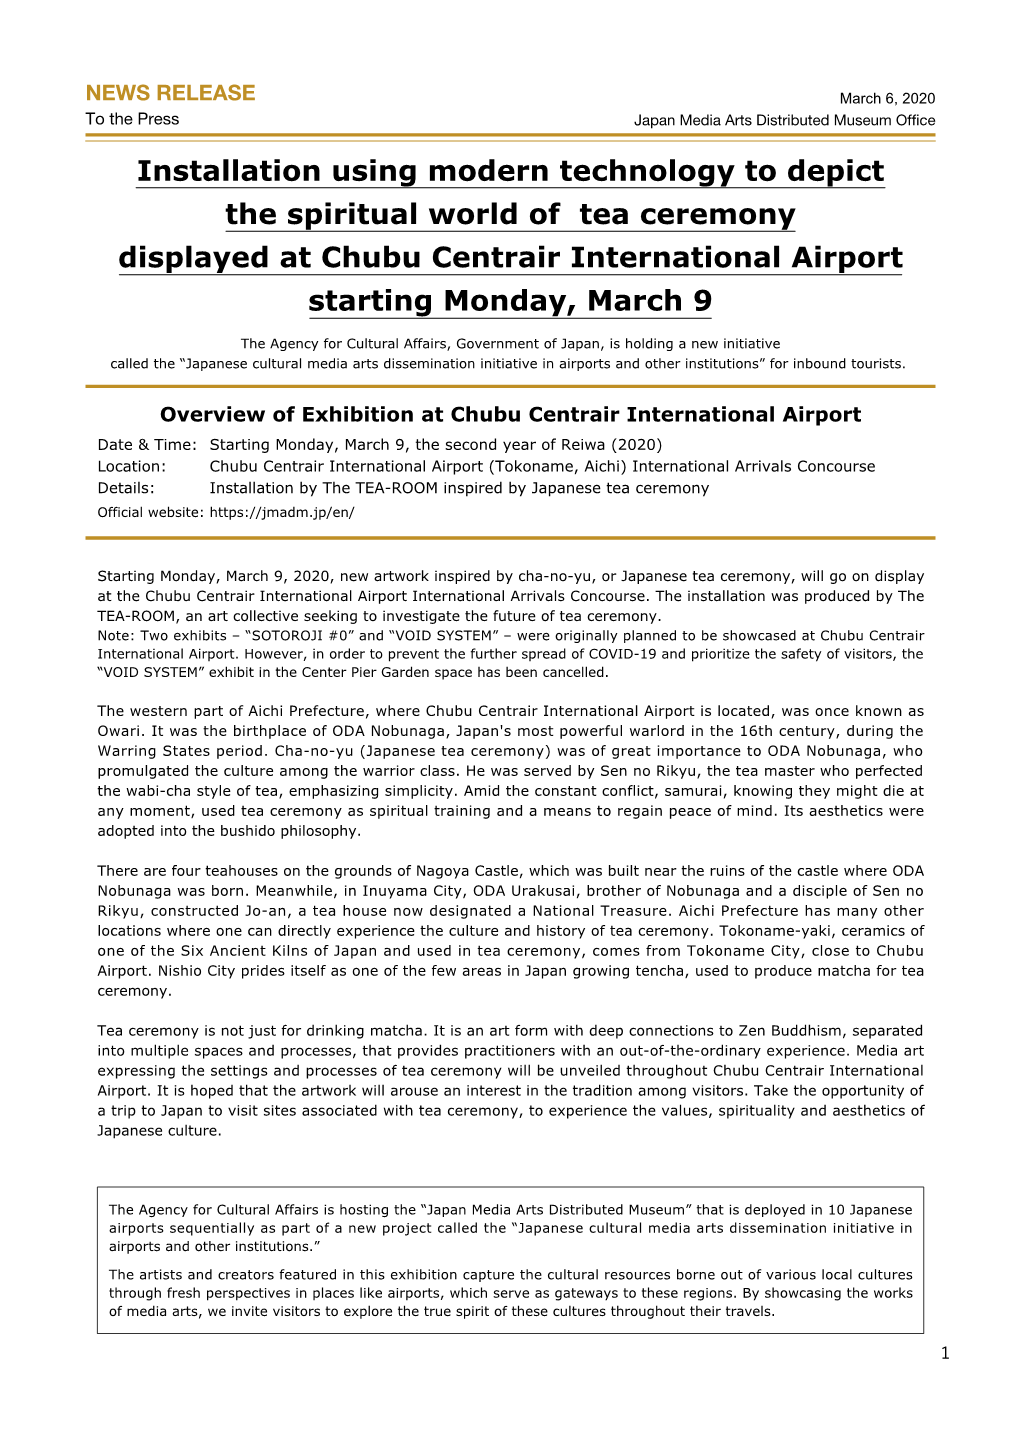 Chubu Centrair International Airport News Release